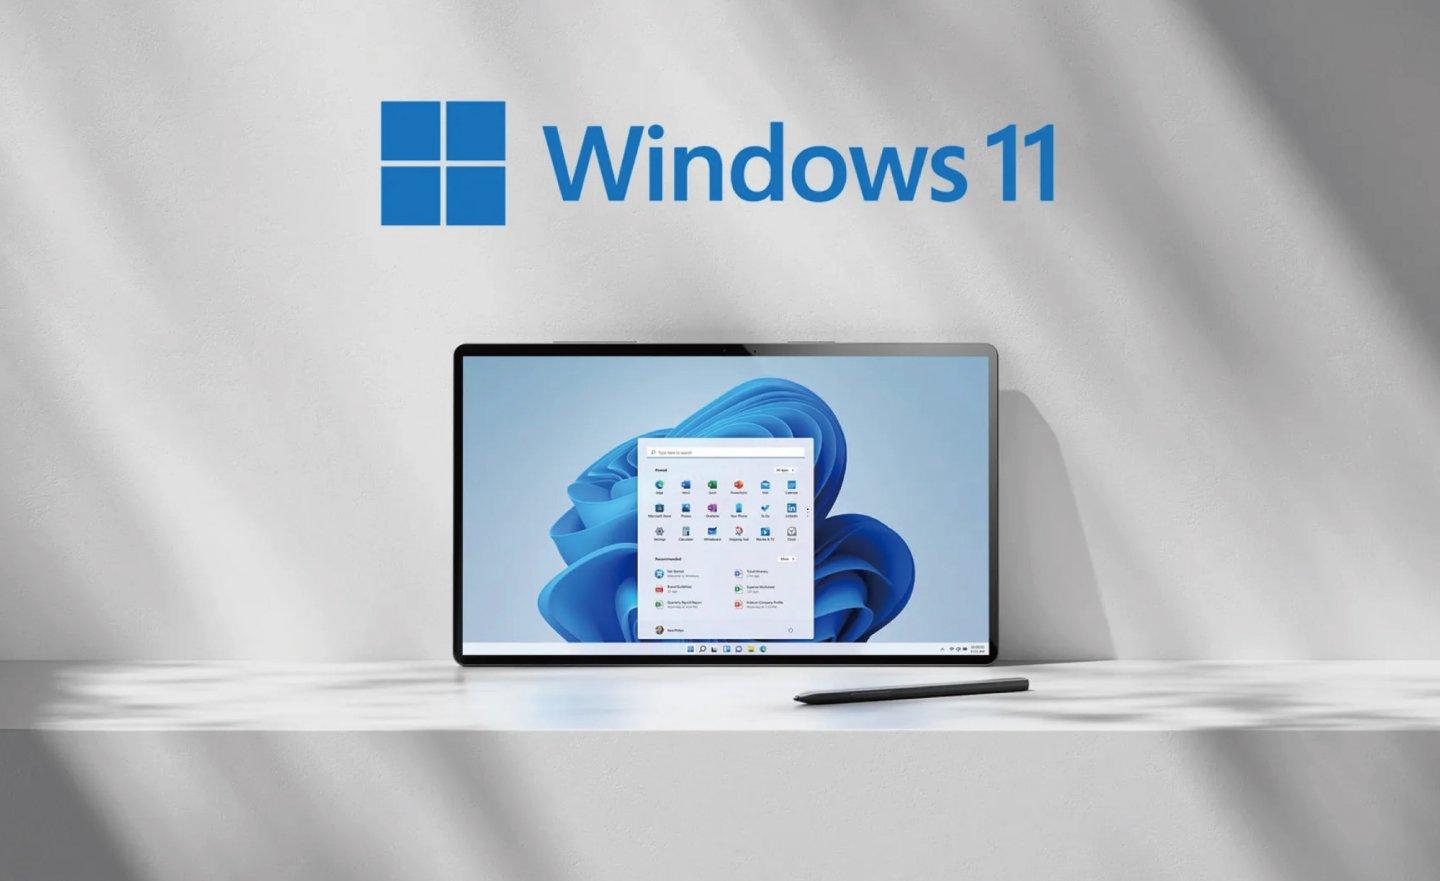 報告指出 Windows 11 使用率達新高，每 5 台電腦就有 1 台安裝